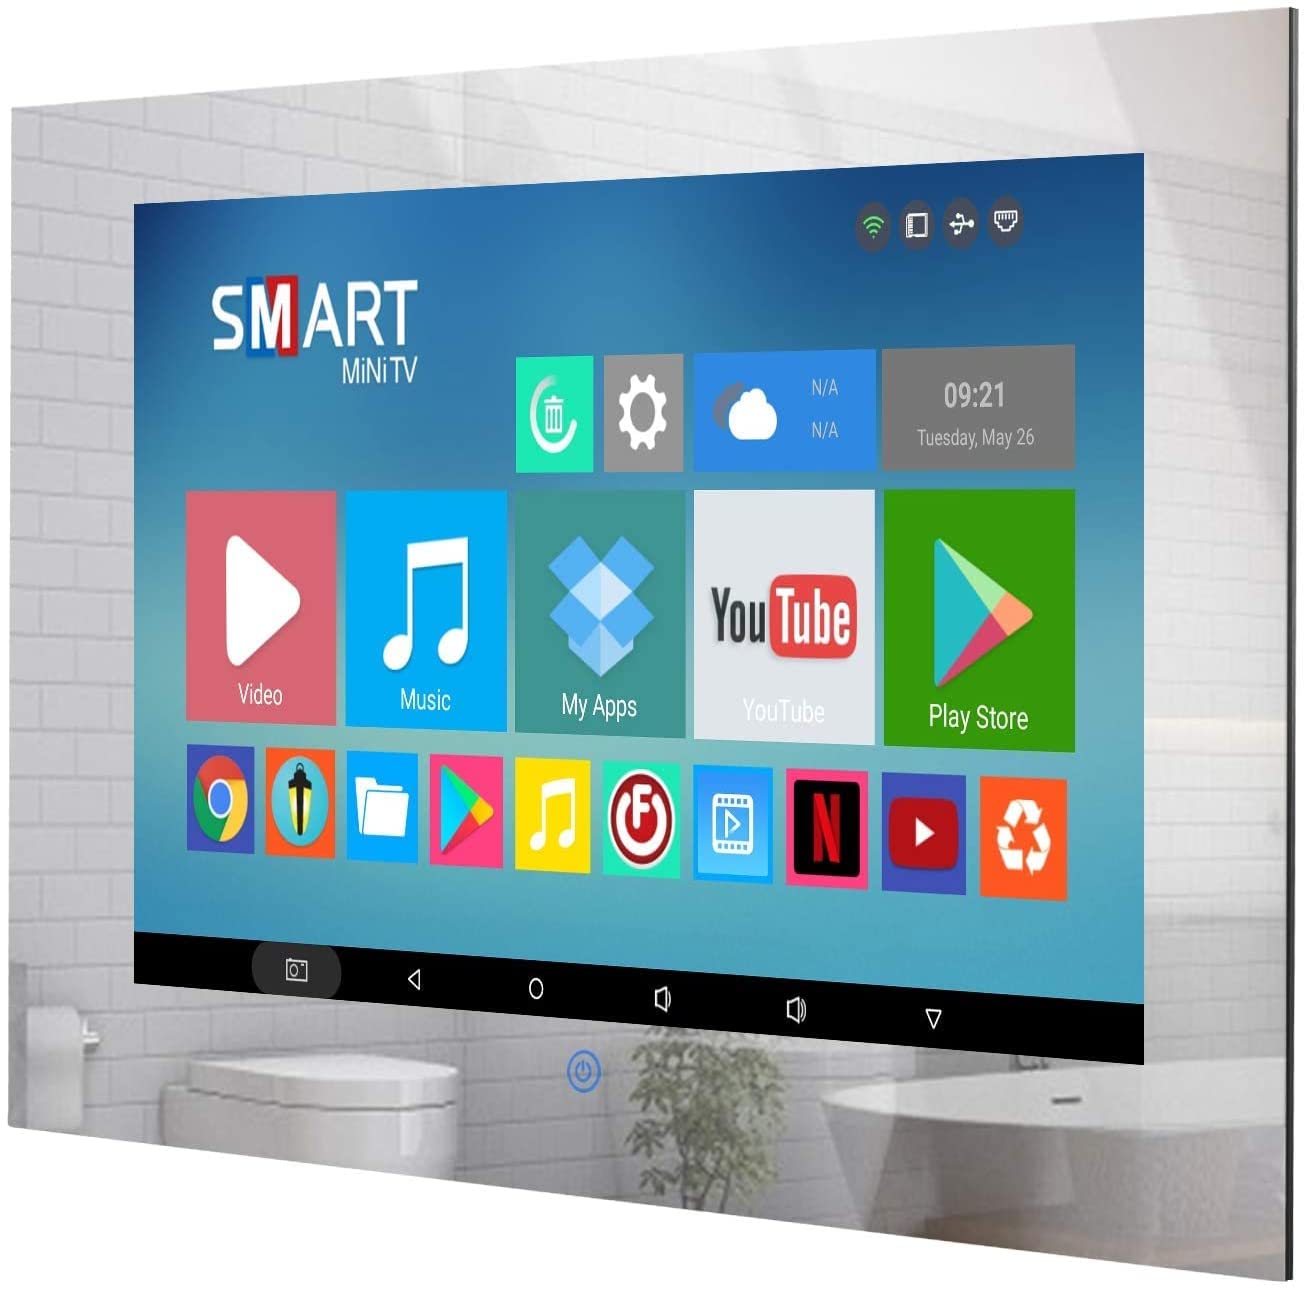 Pequeño espejo de baño de 19 pulgadas TV IP66 a prueba de agua Smart Android 11.0 Televisión LED 1080P Sintonizador ATSC incorporado Wi-Fi Bluetooth (LEHG190BM-M)